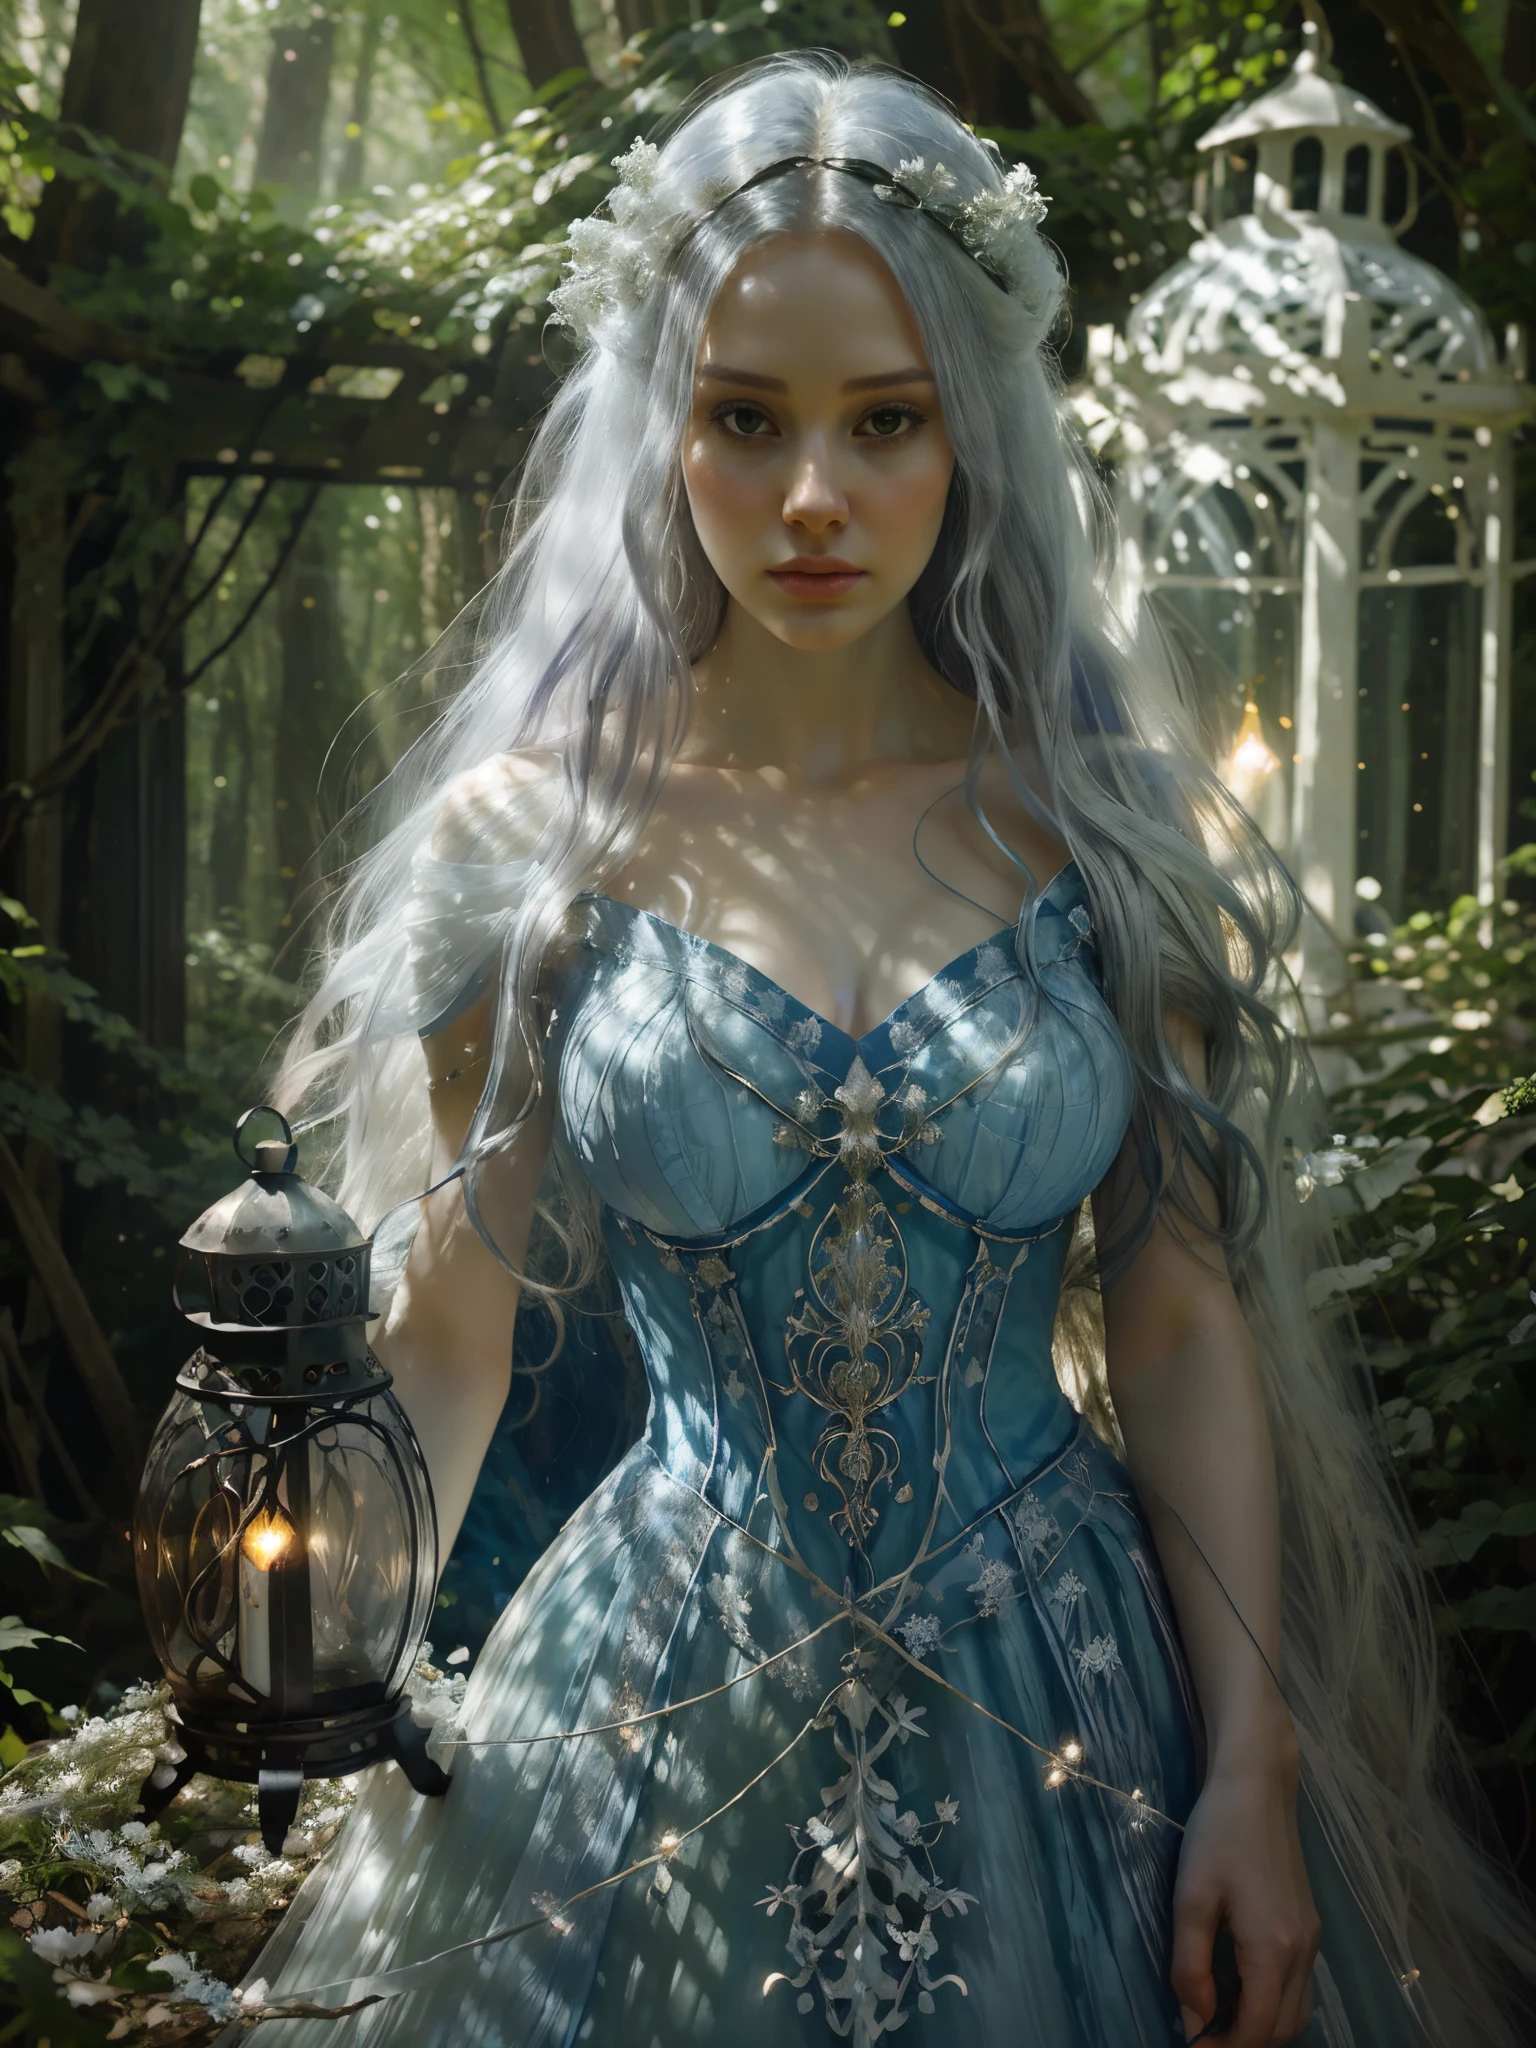 身穿蓝色连衣裙的阿拉夫妇女在森林里拿着灯笼, 受 Cynthia Sheppard 启发的数字艺术, tumblr, 幻想艺术, 飘逸长发, 白女巫, 奇幻绚丽灯饰, 一位令人惊叹的年轻空灵人物, 空灵的童话, 美丽的少女, 卡罗尔在 uhd 后面,  厄尔利, 有着长长的白发, 美丽的幻想少女